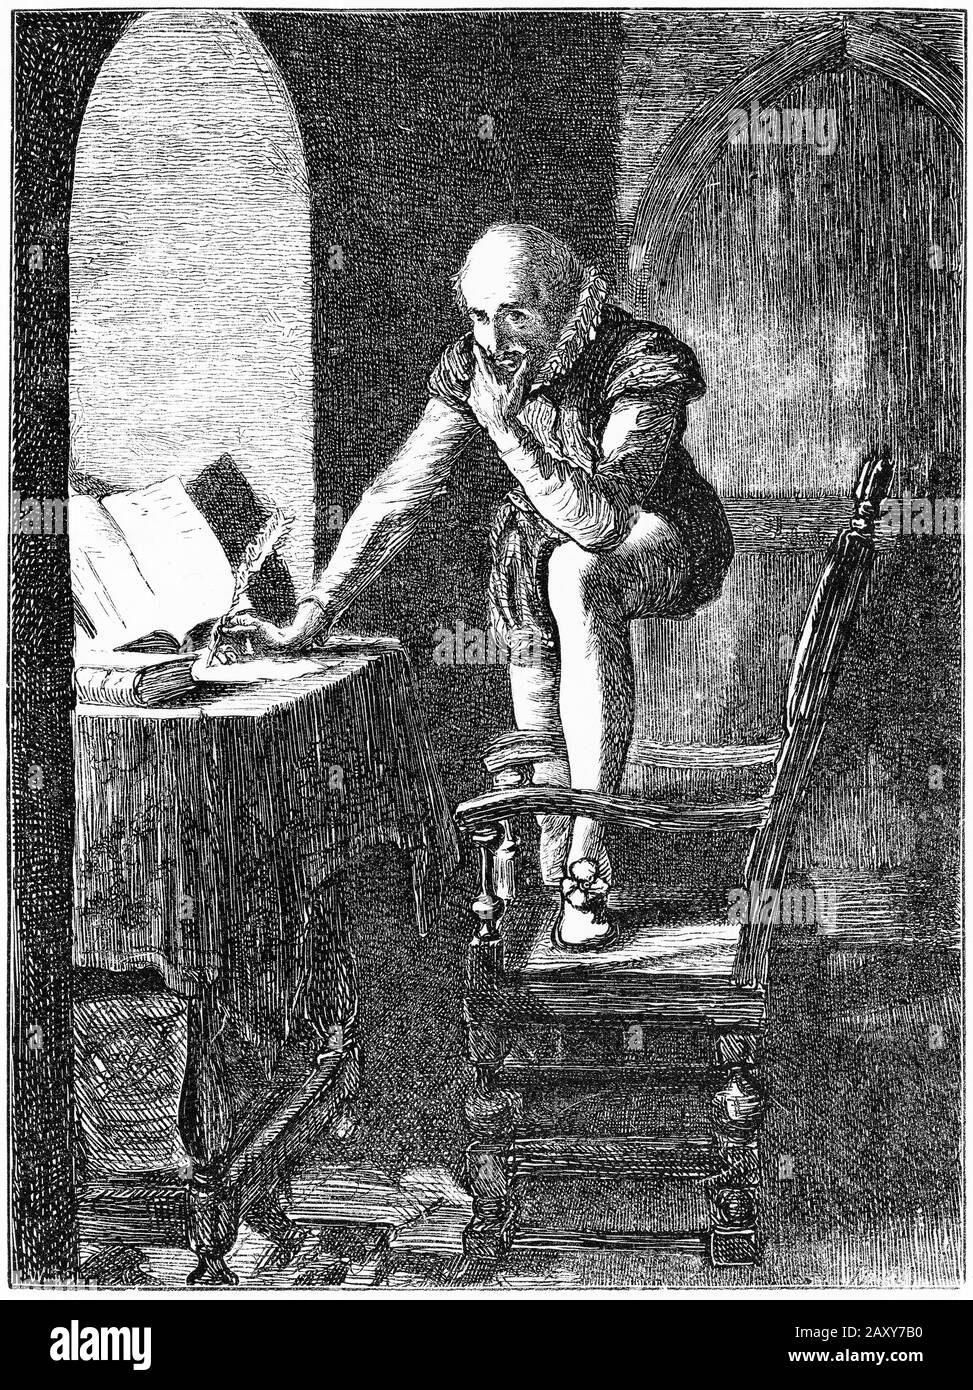 Grabado de Sir Walter Raleigh (c. 1552 – 1618), caballero inglés desembarcado, escritor, poeta, soldado, político, cortesano, espía y explorador. Raleigh fue una de las figuras más notables de la era isabelina, pero fue ejecutado para apaciguar a los españoles después de romper un tratado de 1604. Foto de stock